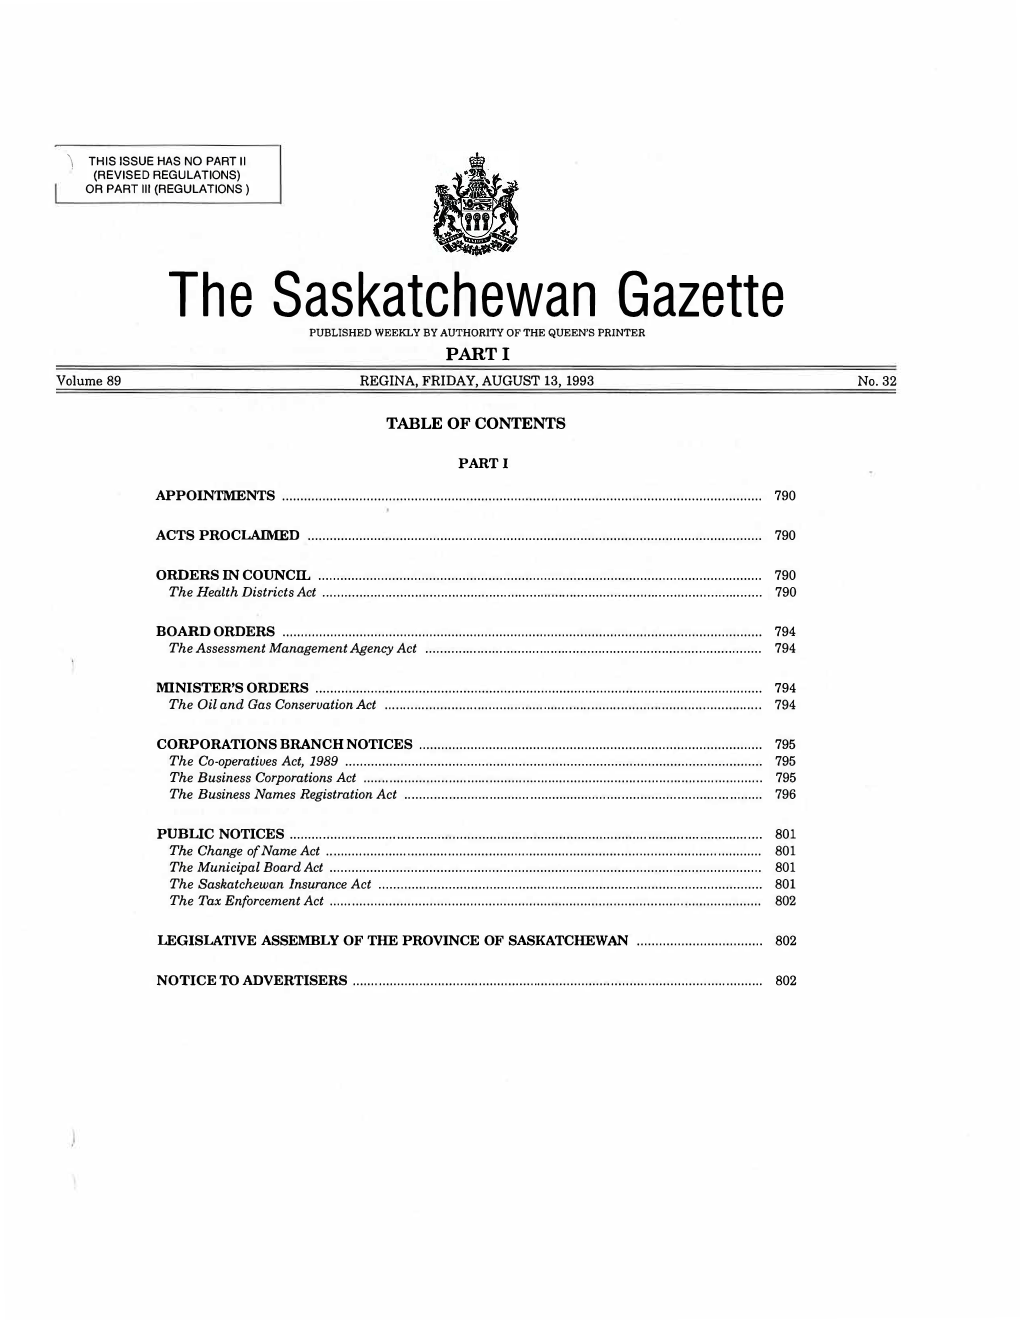 The Saskatchewan Gazette PUBLISHED WEEKLYBY AUTHORITY of the QUEEN's PRINTER PART I Volume 89 REGINA, FRIDAY, AUGUST 13, 1993 No.32